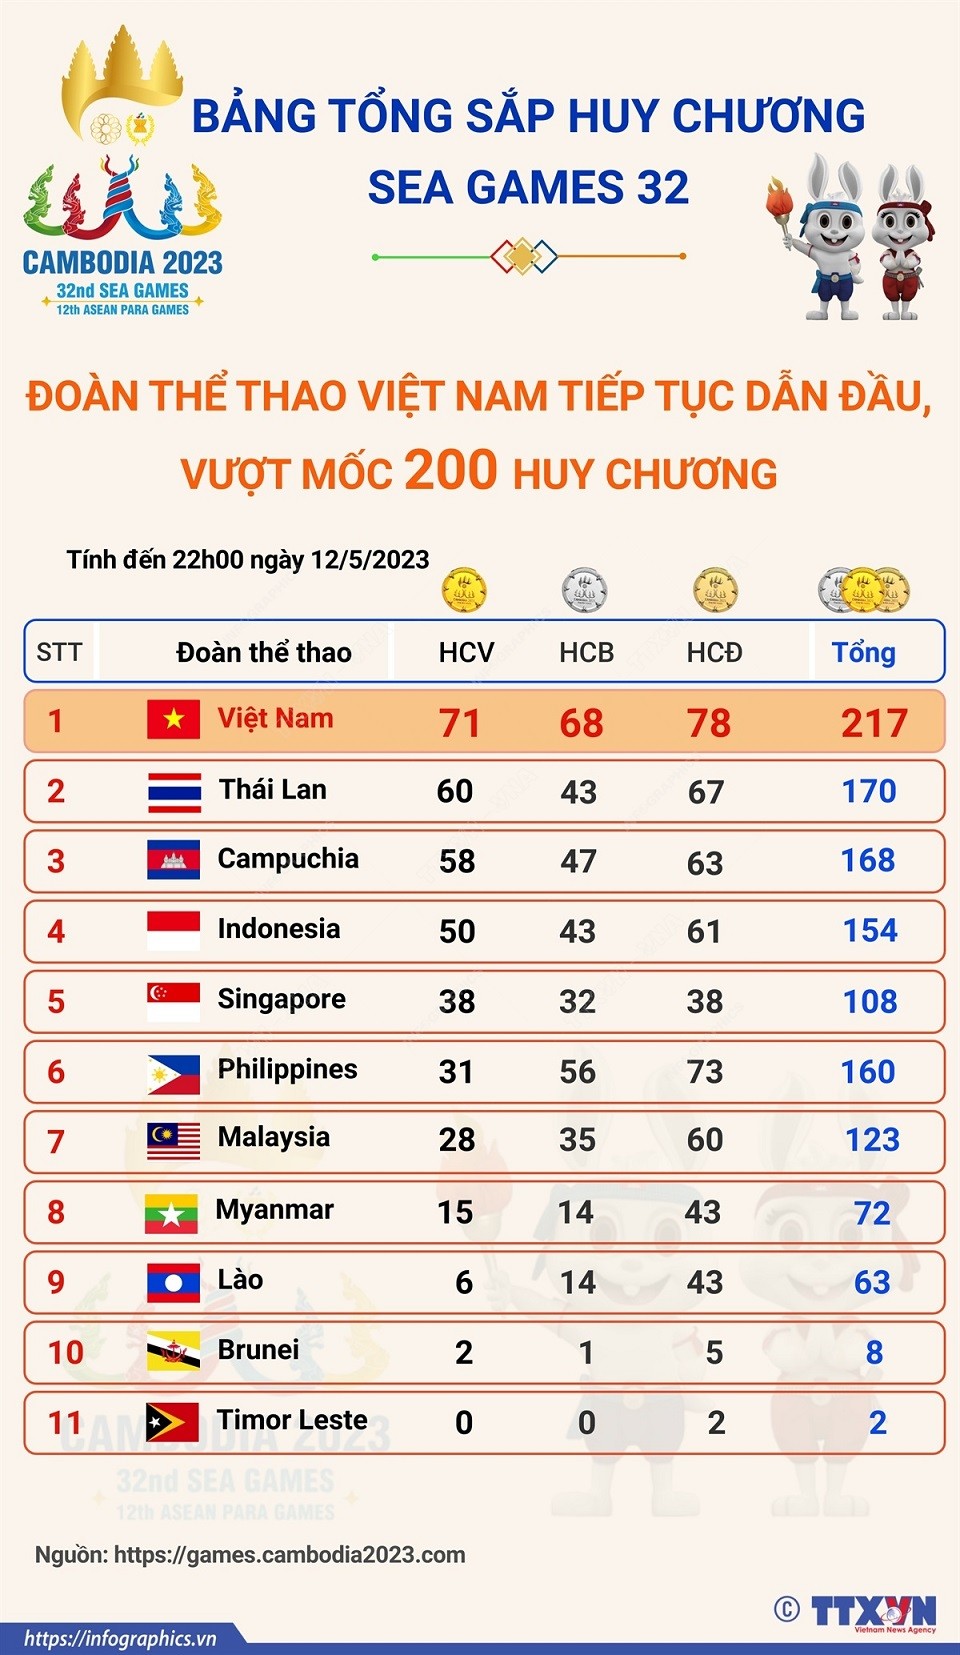 SEA Games 32: Hết ngày 12/5, Đoàn thể thao Việt Nam đứng vững ngôi đầu bảng tổng sắp huy chương